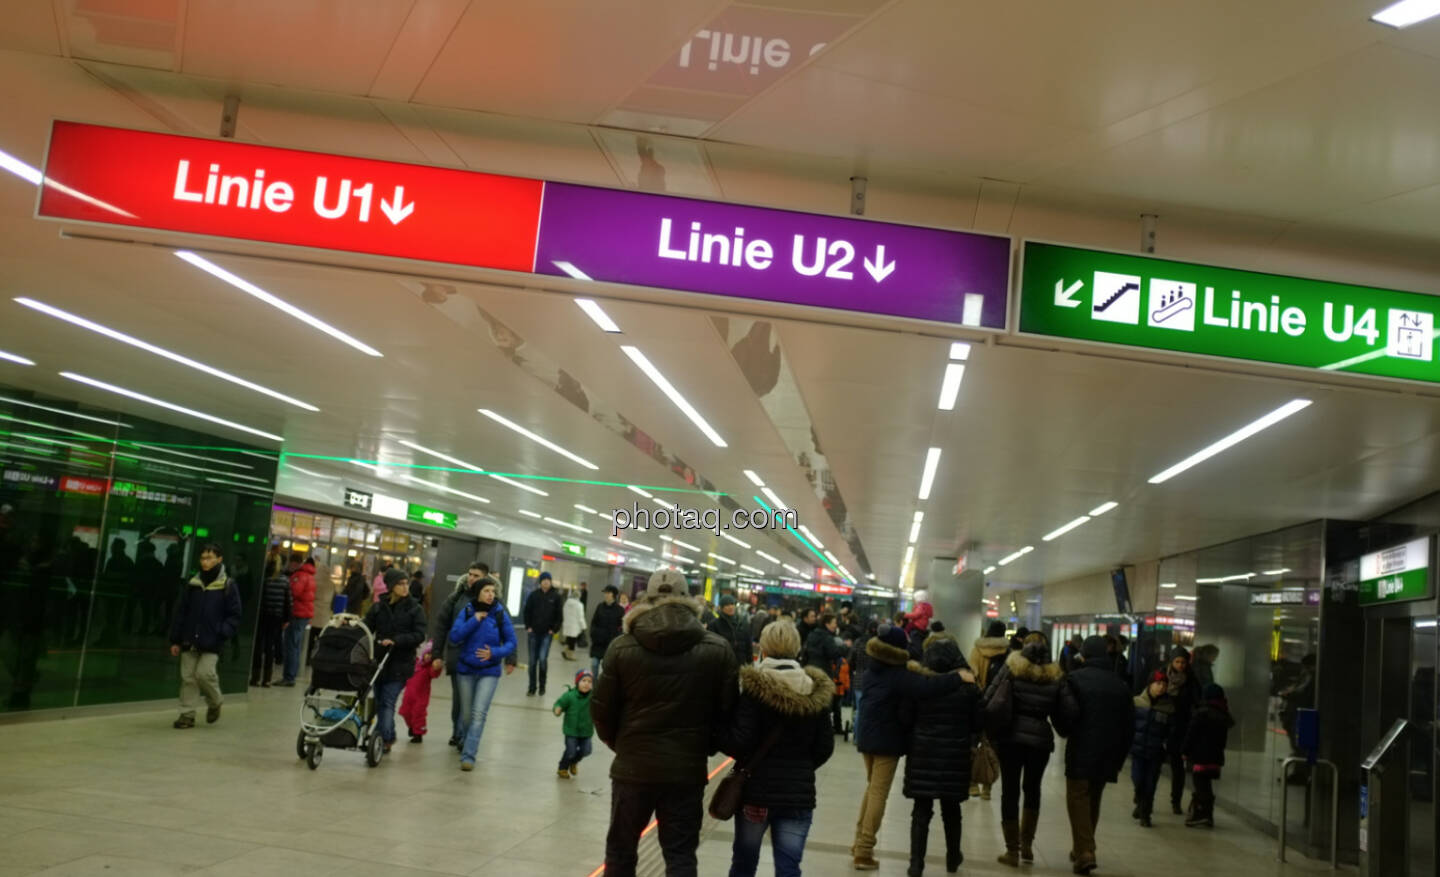 U-Bahn, U1, U2, U4